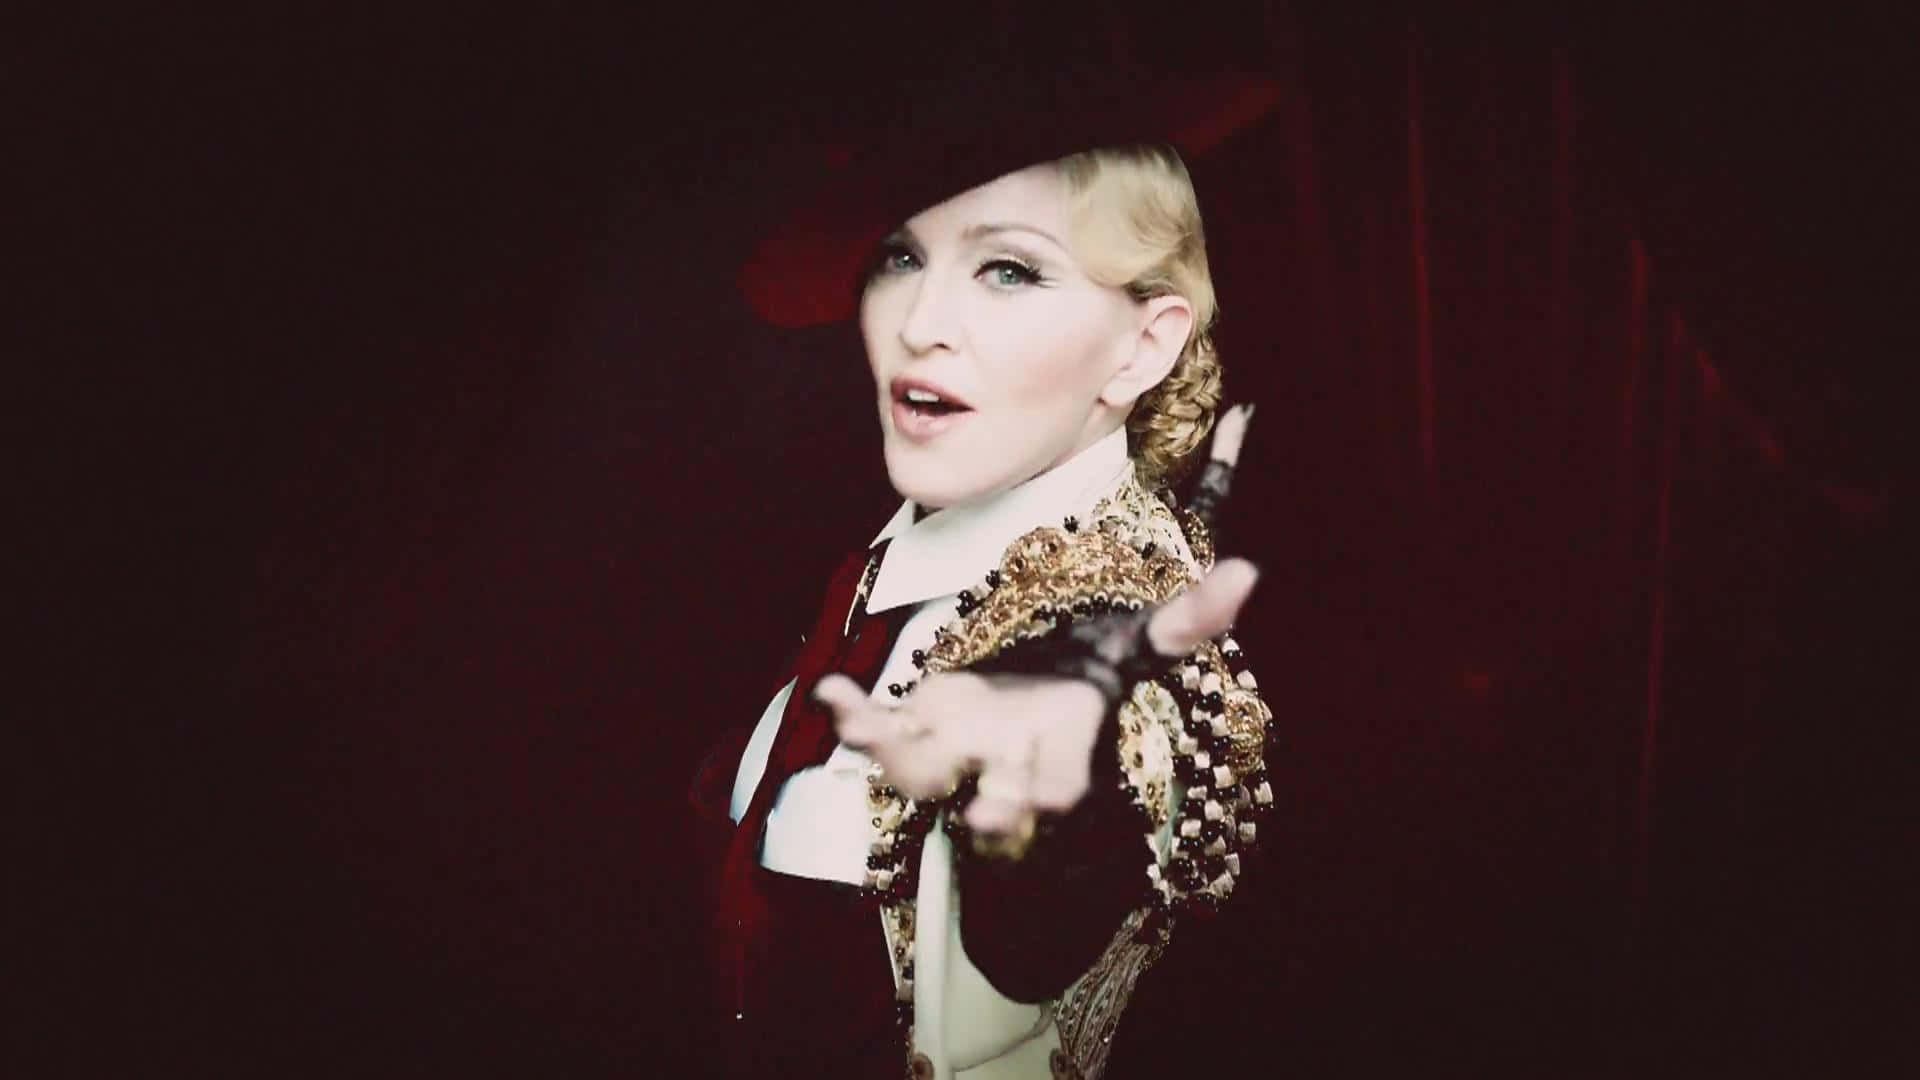 Madonnaverkörpert Ihren Ikonischen Musikvideo-look In Diesem Zeitlosen Porträt.